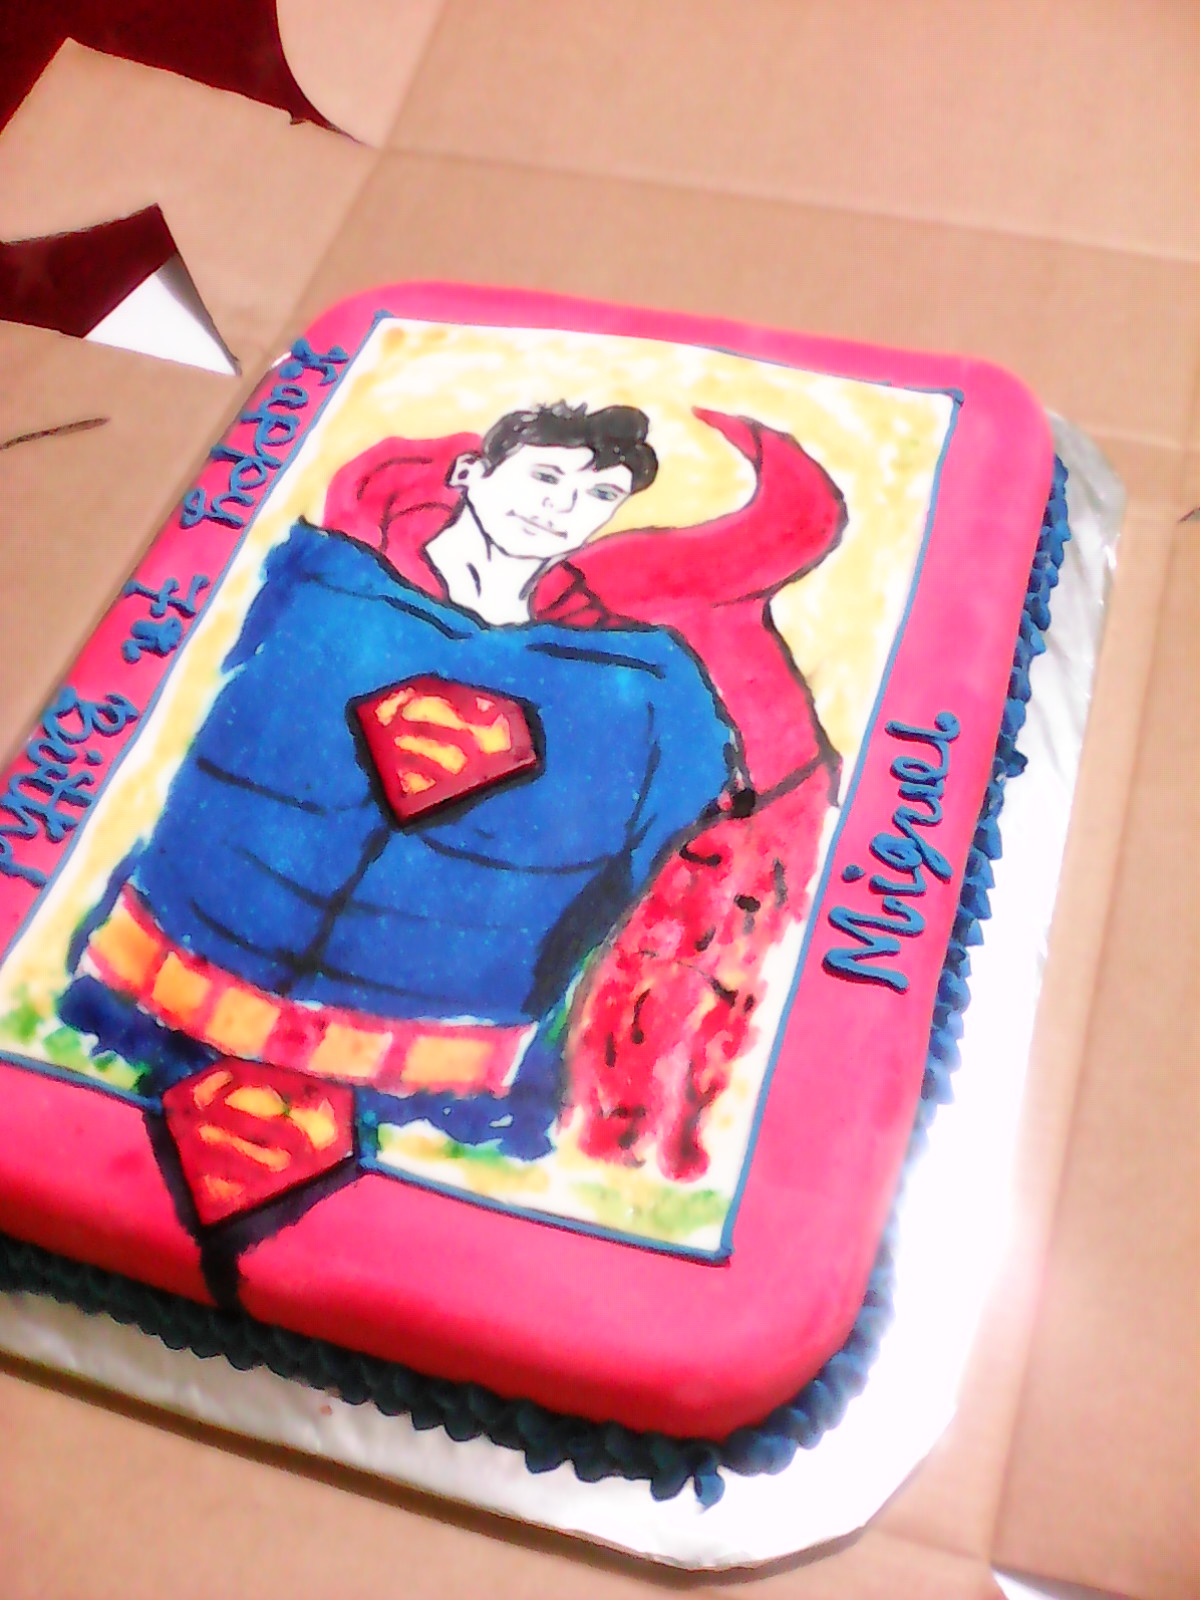 Home Baking Uganda  superman cake  